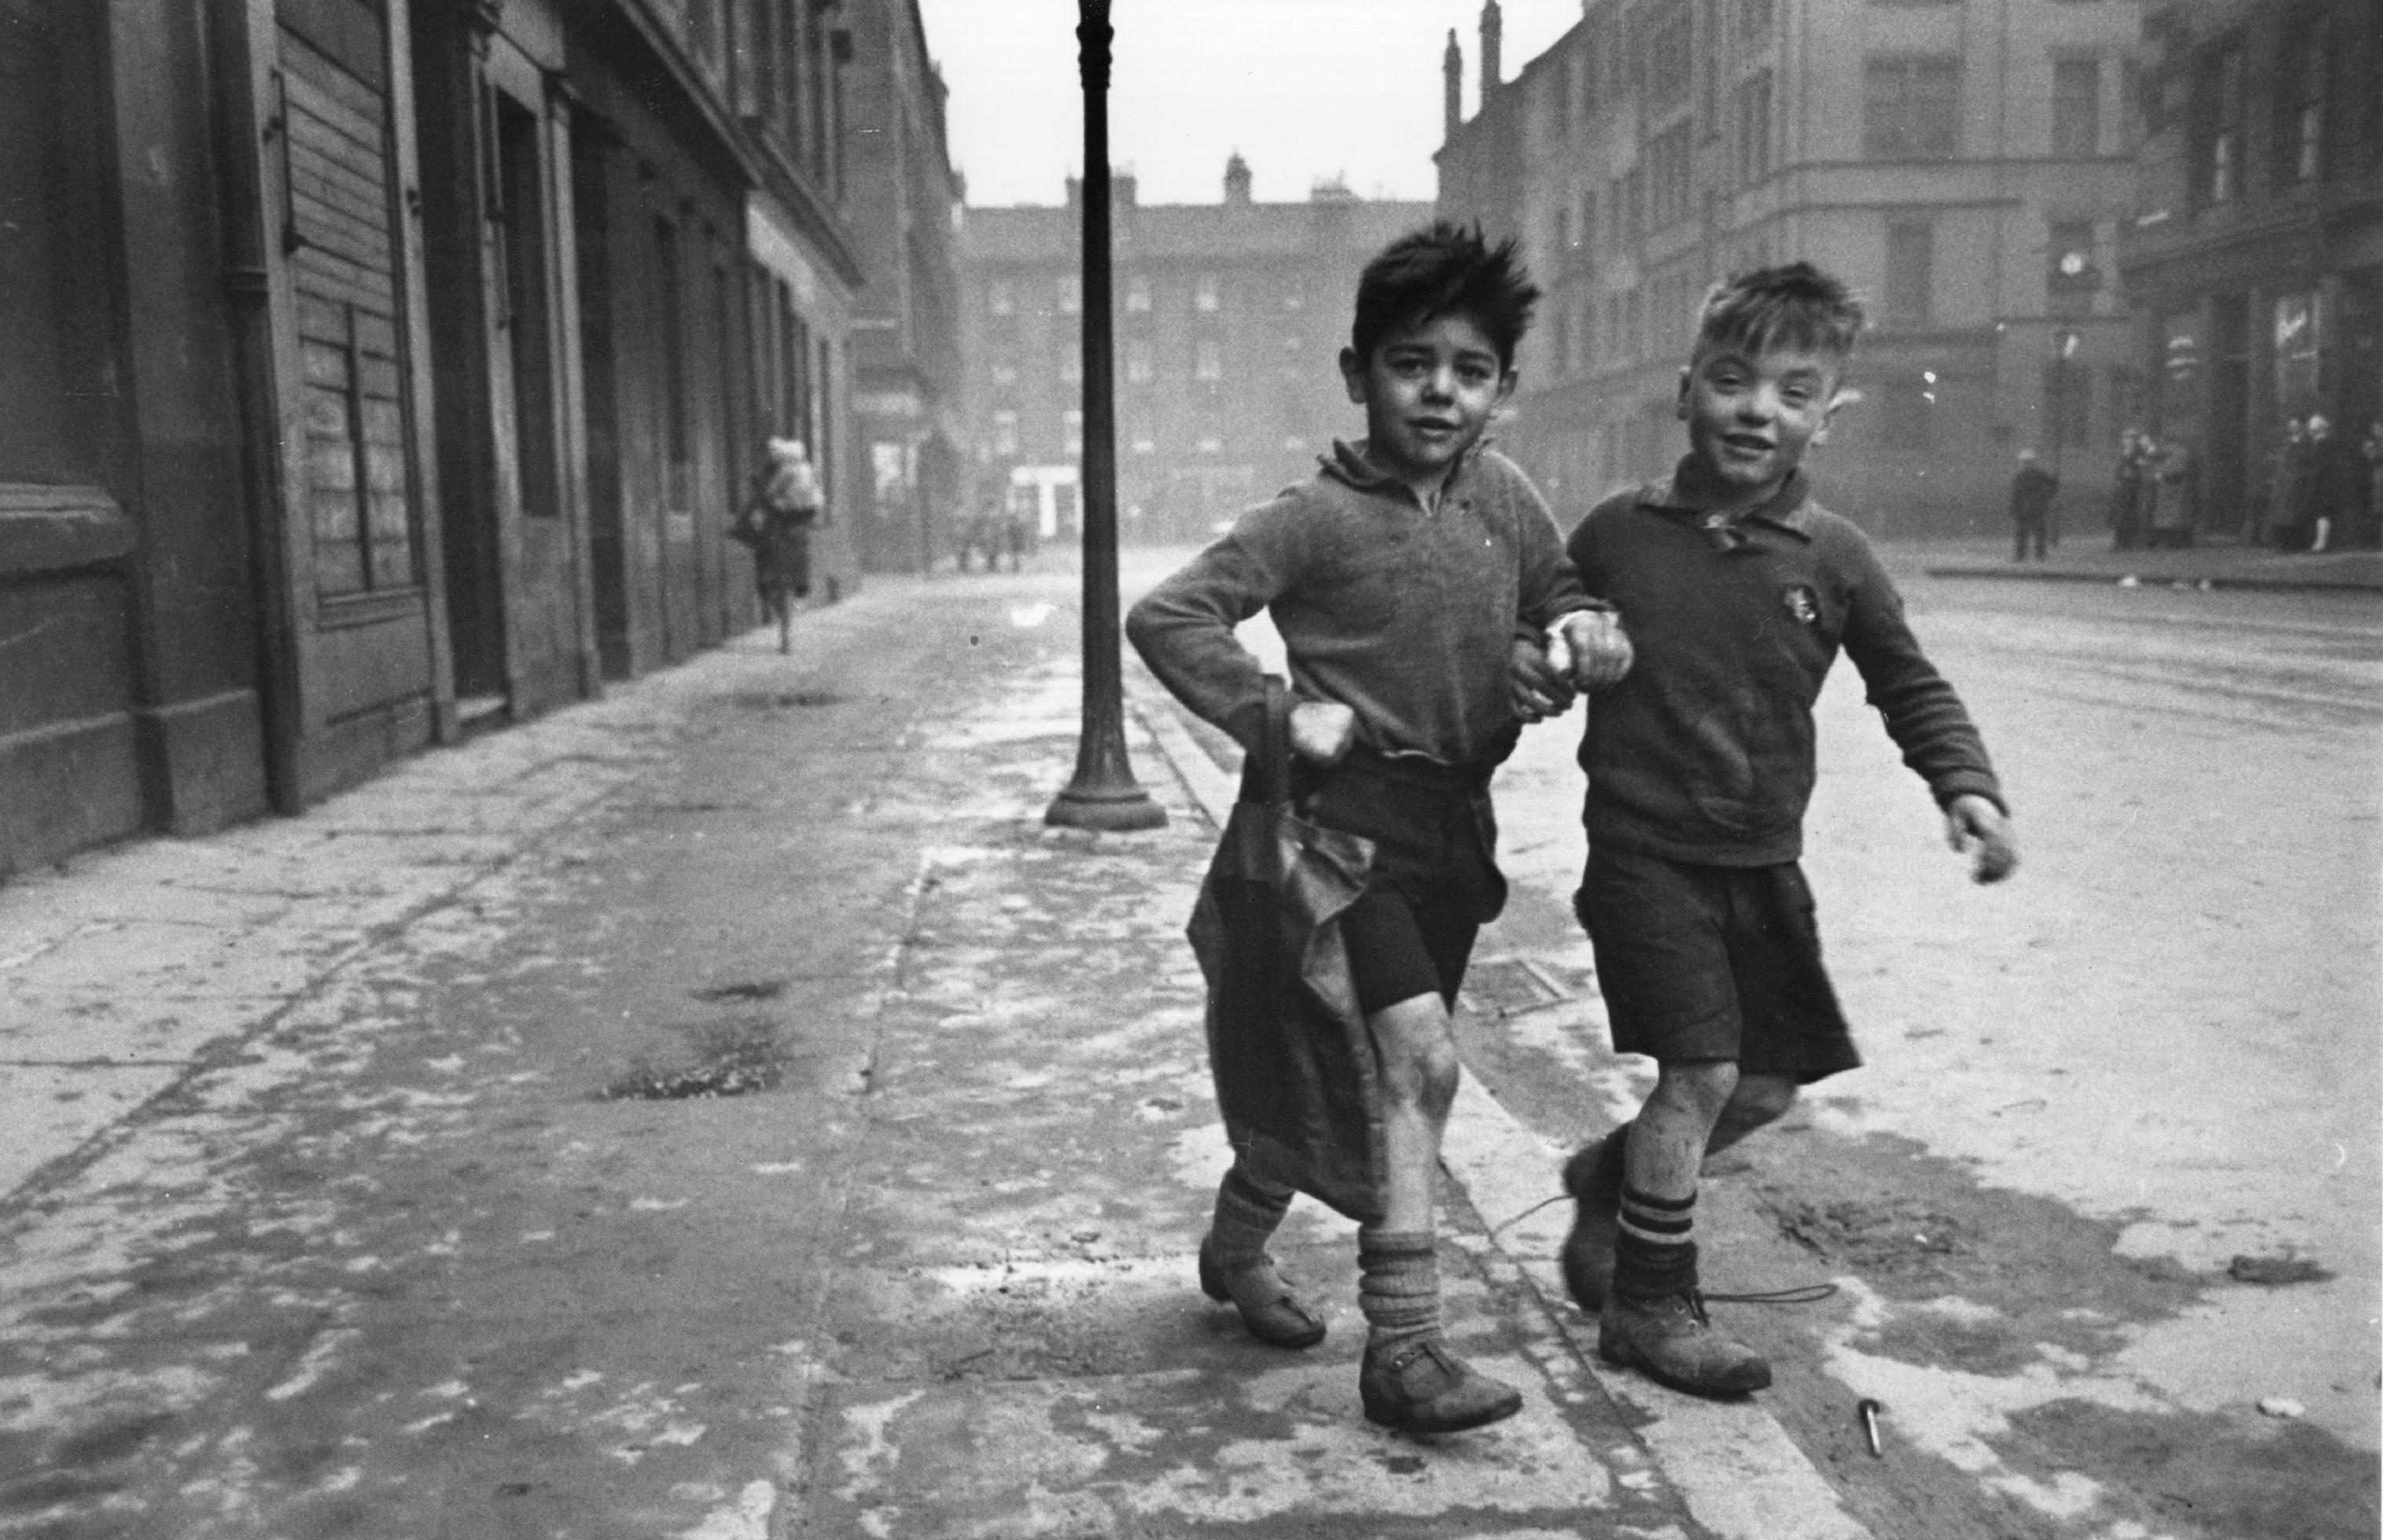 Gorbals Boys (1948) - Impression fibre de gélatine argentée

(Photo par Bert Hardy/Getty Images Archive London)

Peut-être l'image la plus célèbre de Bert Hardy.
Deux garçons du quartier de Gorbals à Glasgow. 
Les immeubles de Gorbals ont été